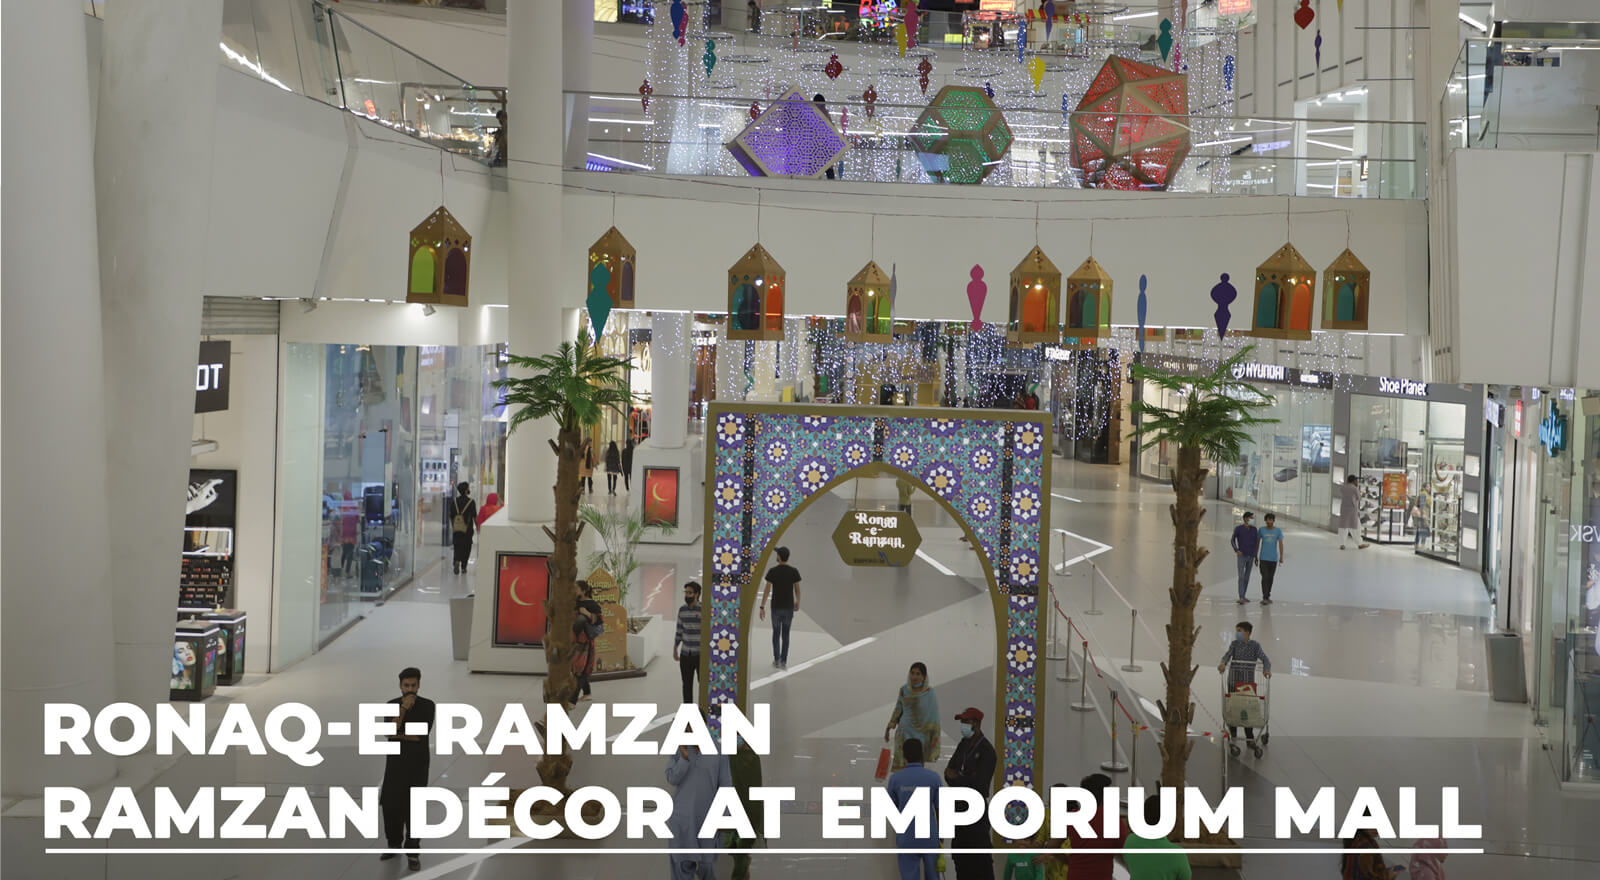 Ronaq-e-Ramzan Decore at Emporium Mall